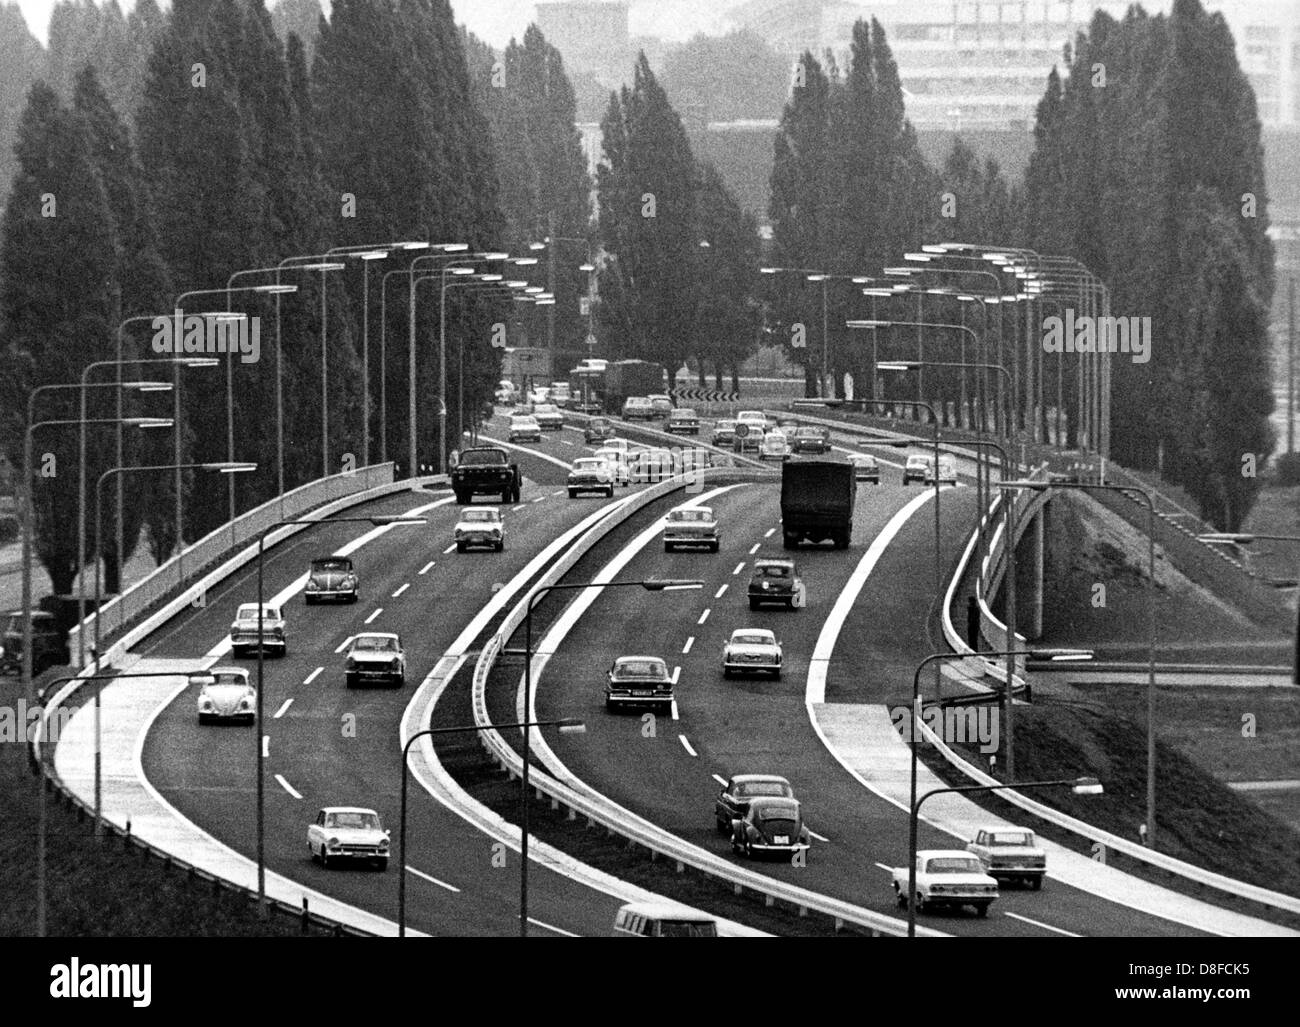 Blick auf eine Stahlbrücke in Frankfurt Am Main am 24. August 1967, der so genannten Opel Kreisel. Kurz nach der Eröffnung wurde die westliche Zufahrt nach Frankfurt viel frequentiert. Stockfoto